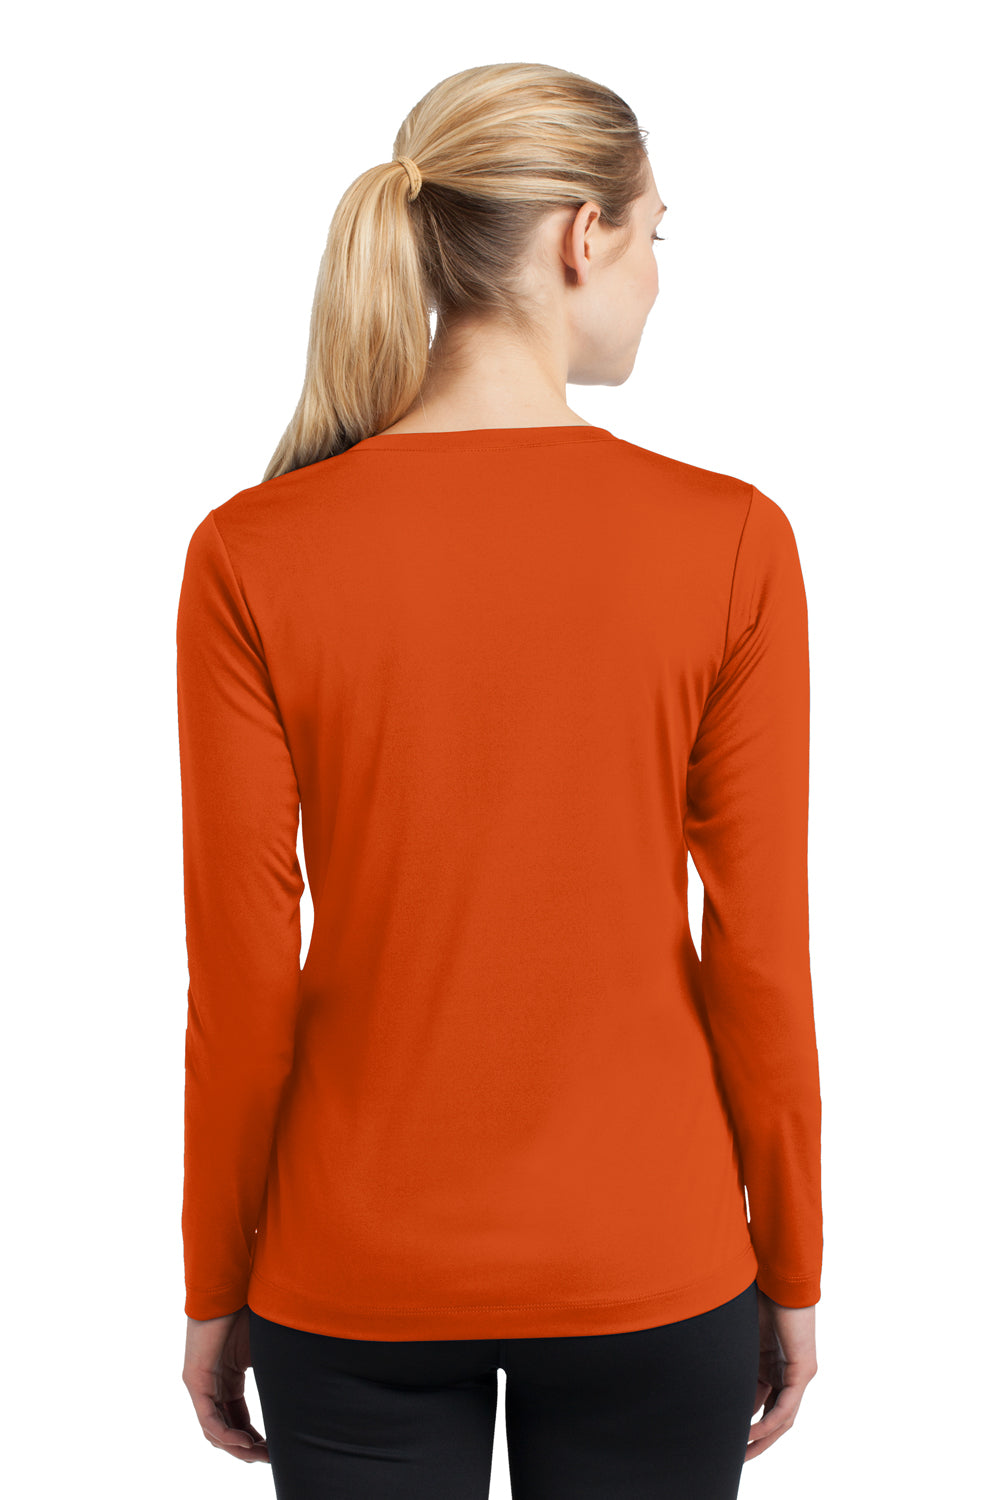 Sport-Tek LST353LS Womens Competitor Moisture Wicking Long Sleeve V-Neck T-Shirt Orange Back